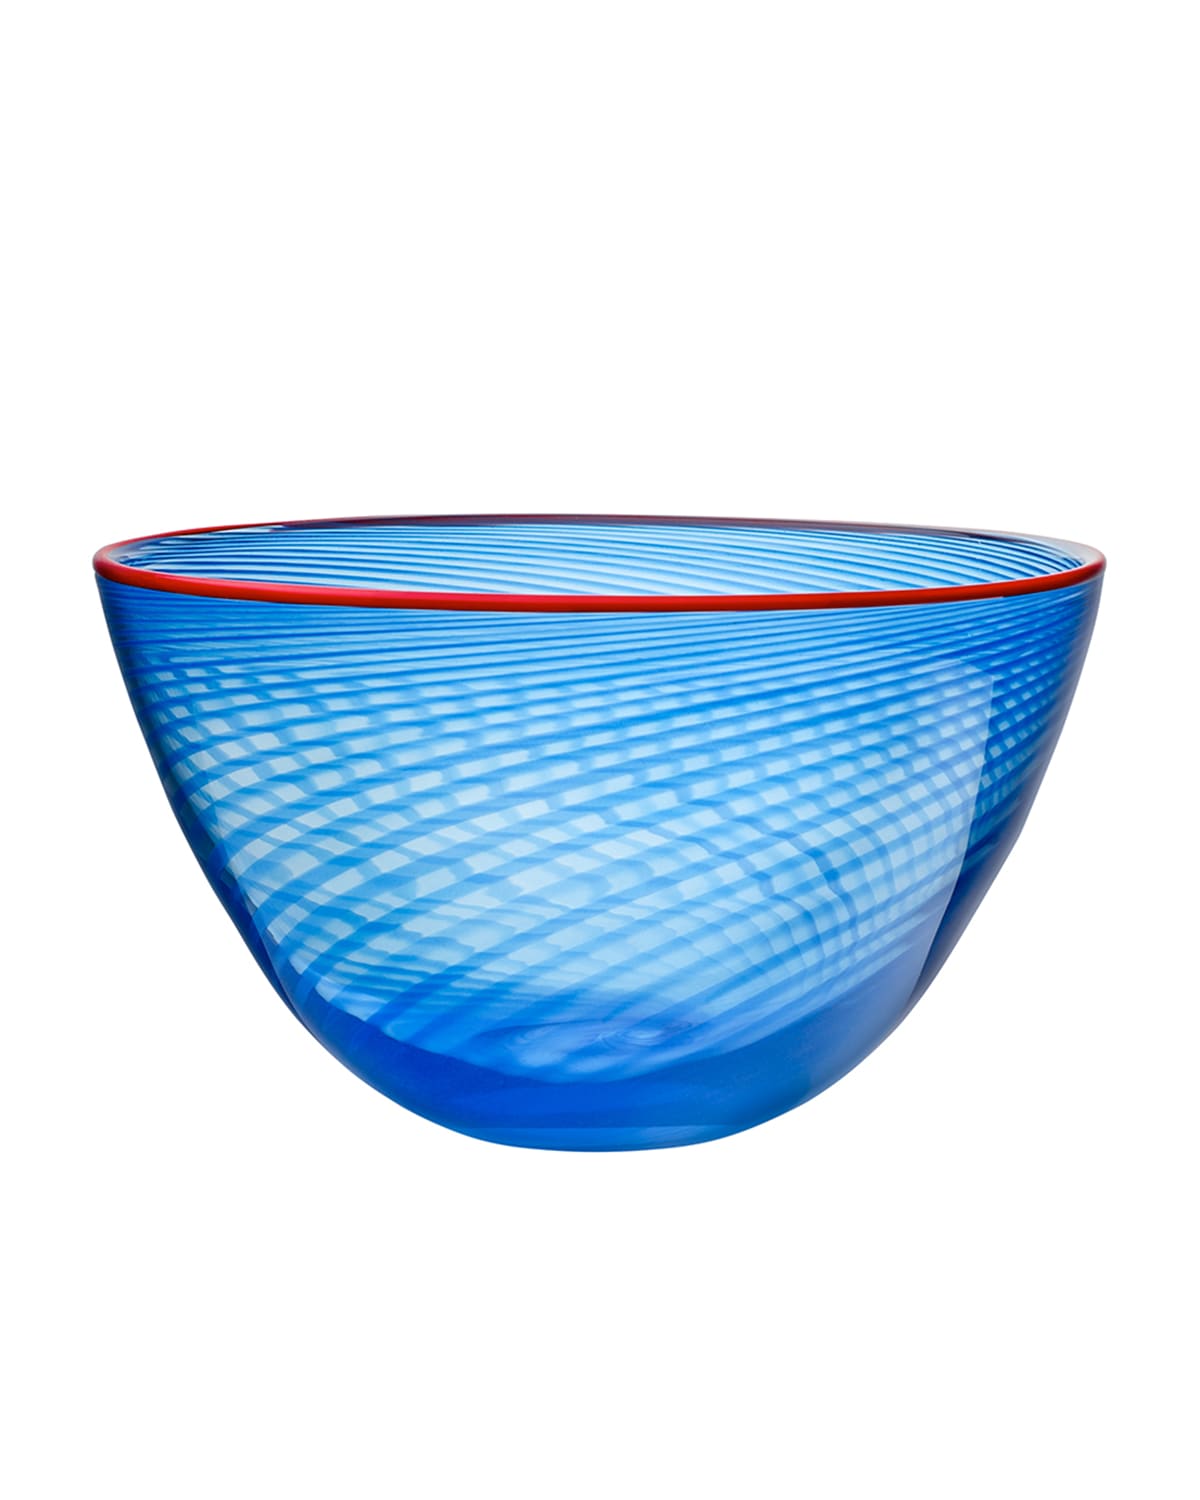 Kosta Boda Small Red Rim Bowl In Blue W/red Rim